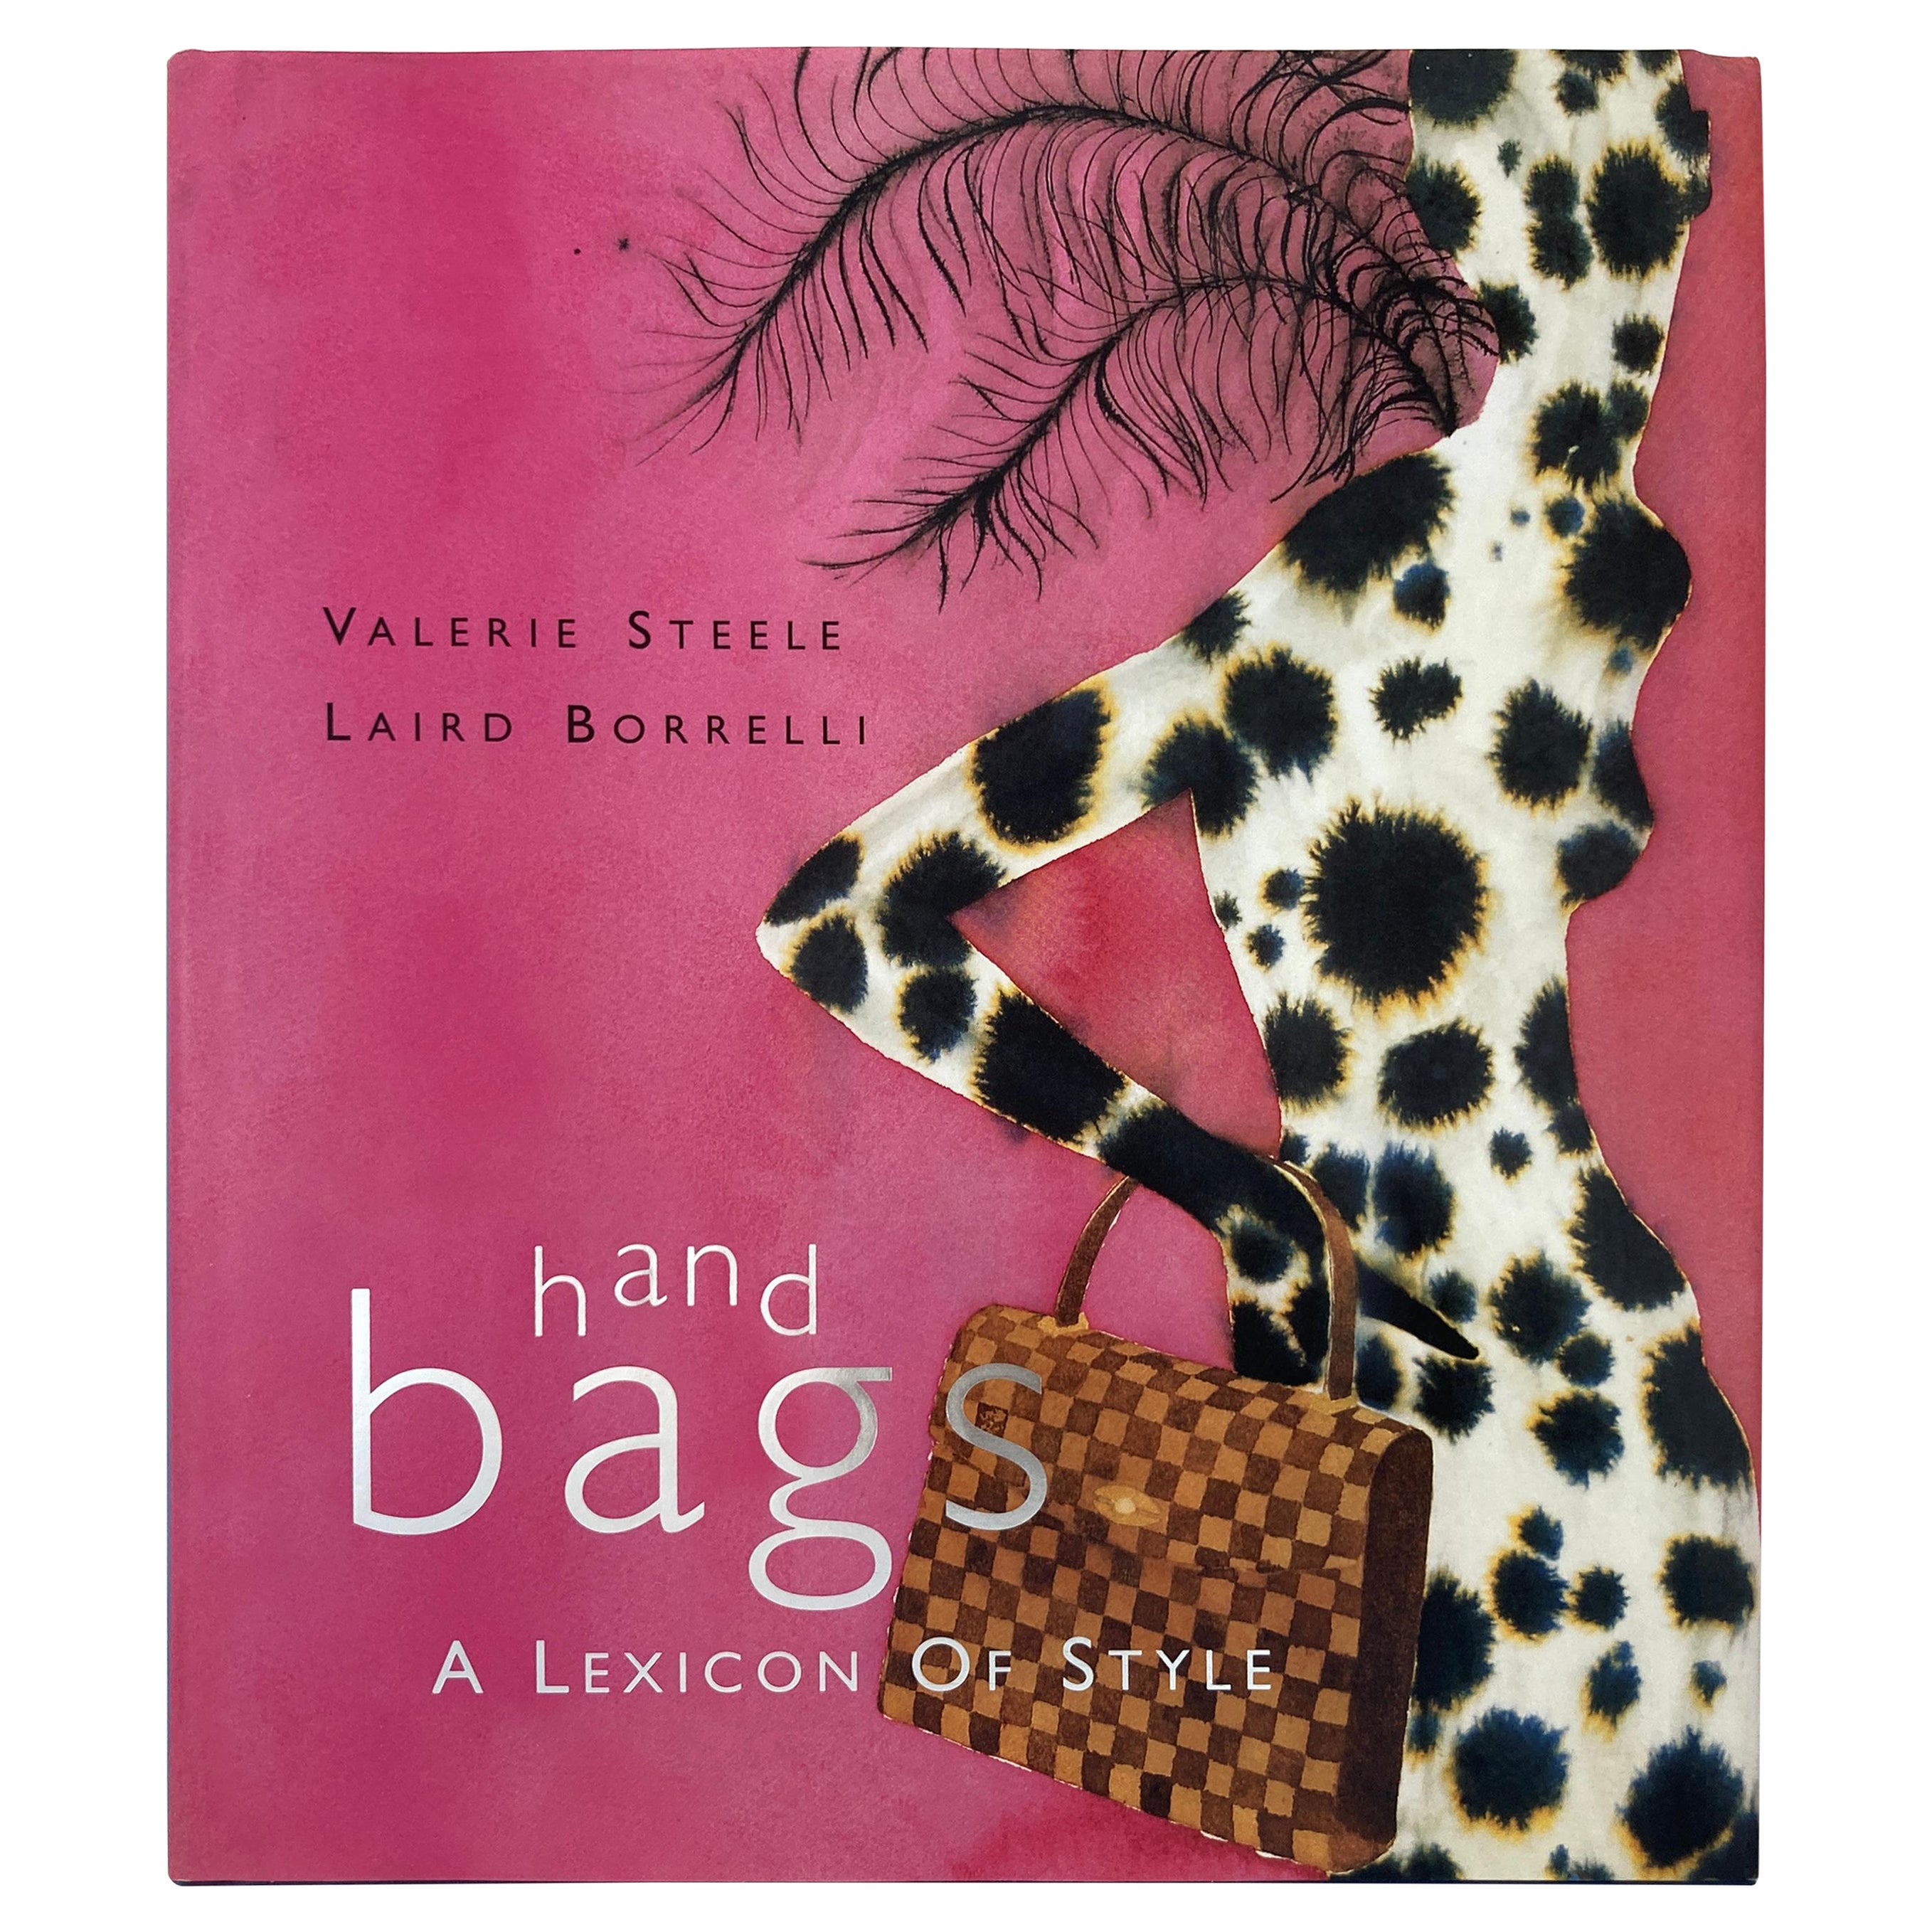 Sacs : A Lexicon of Style Valerie Steele, Laird Borrelli Livre à couverture rigide 1ère édition en vente